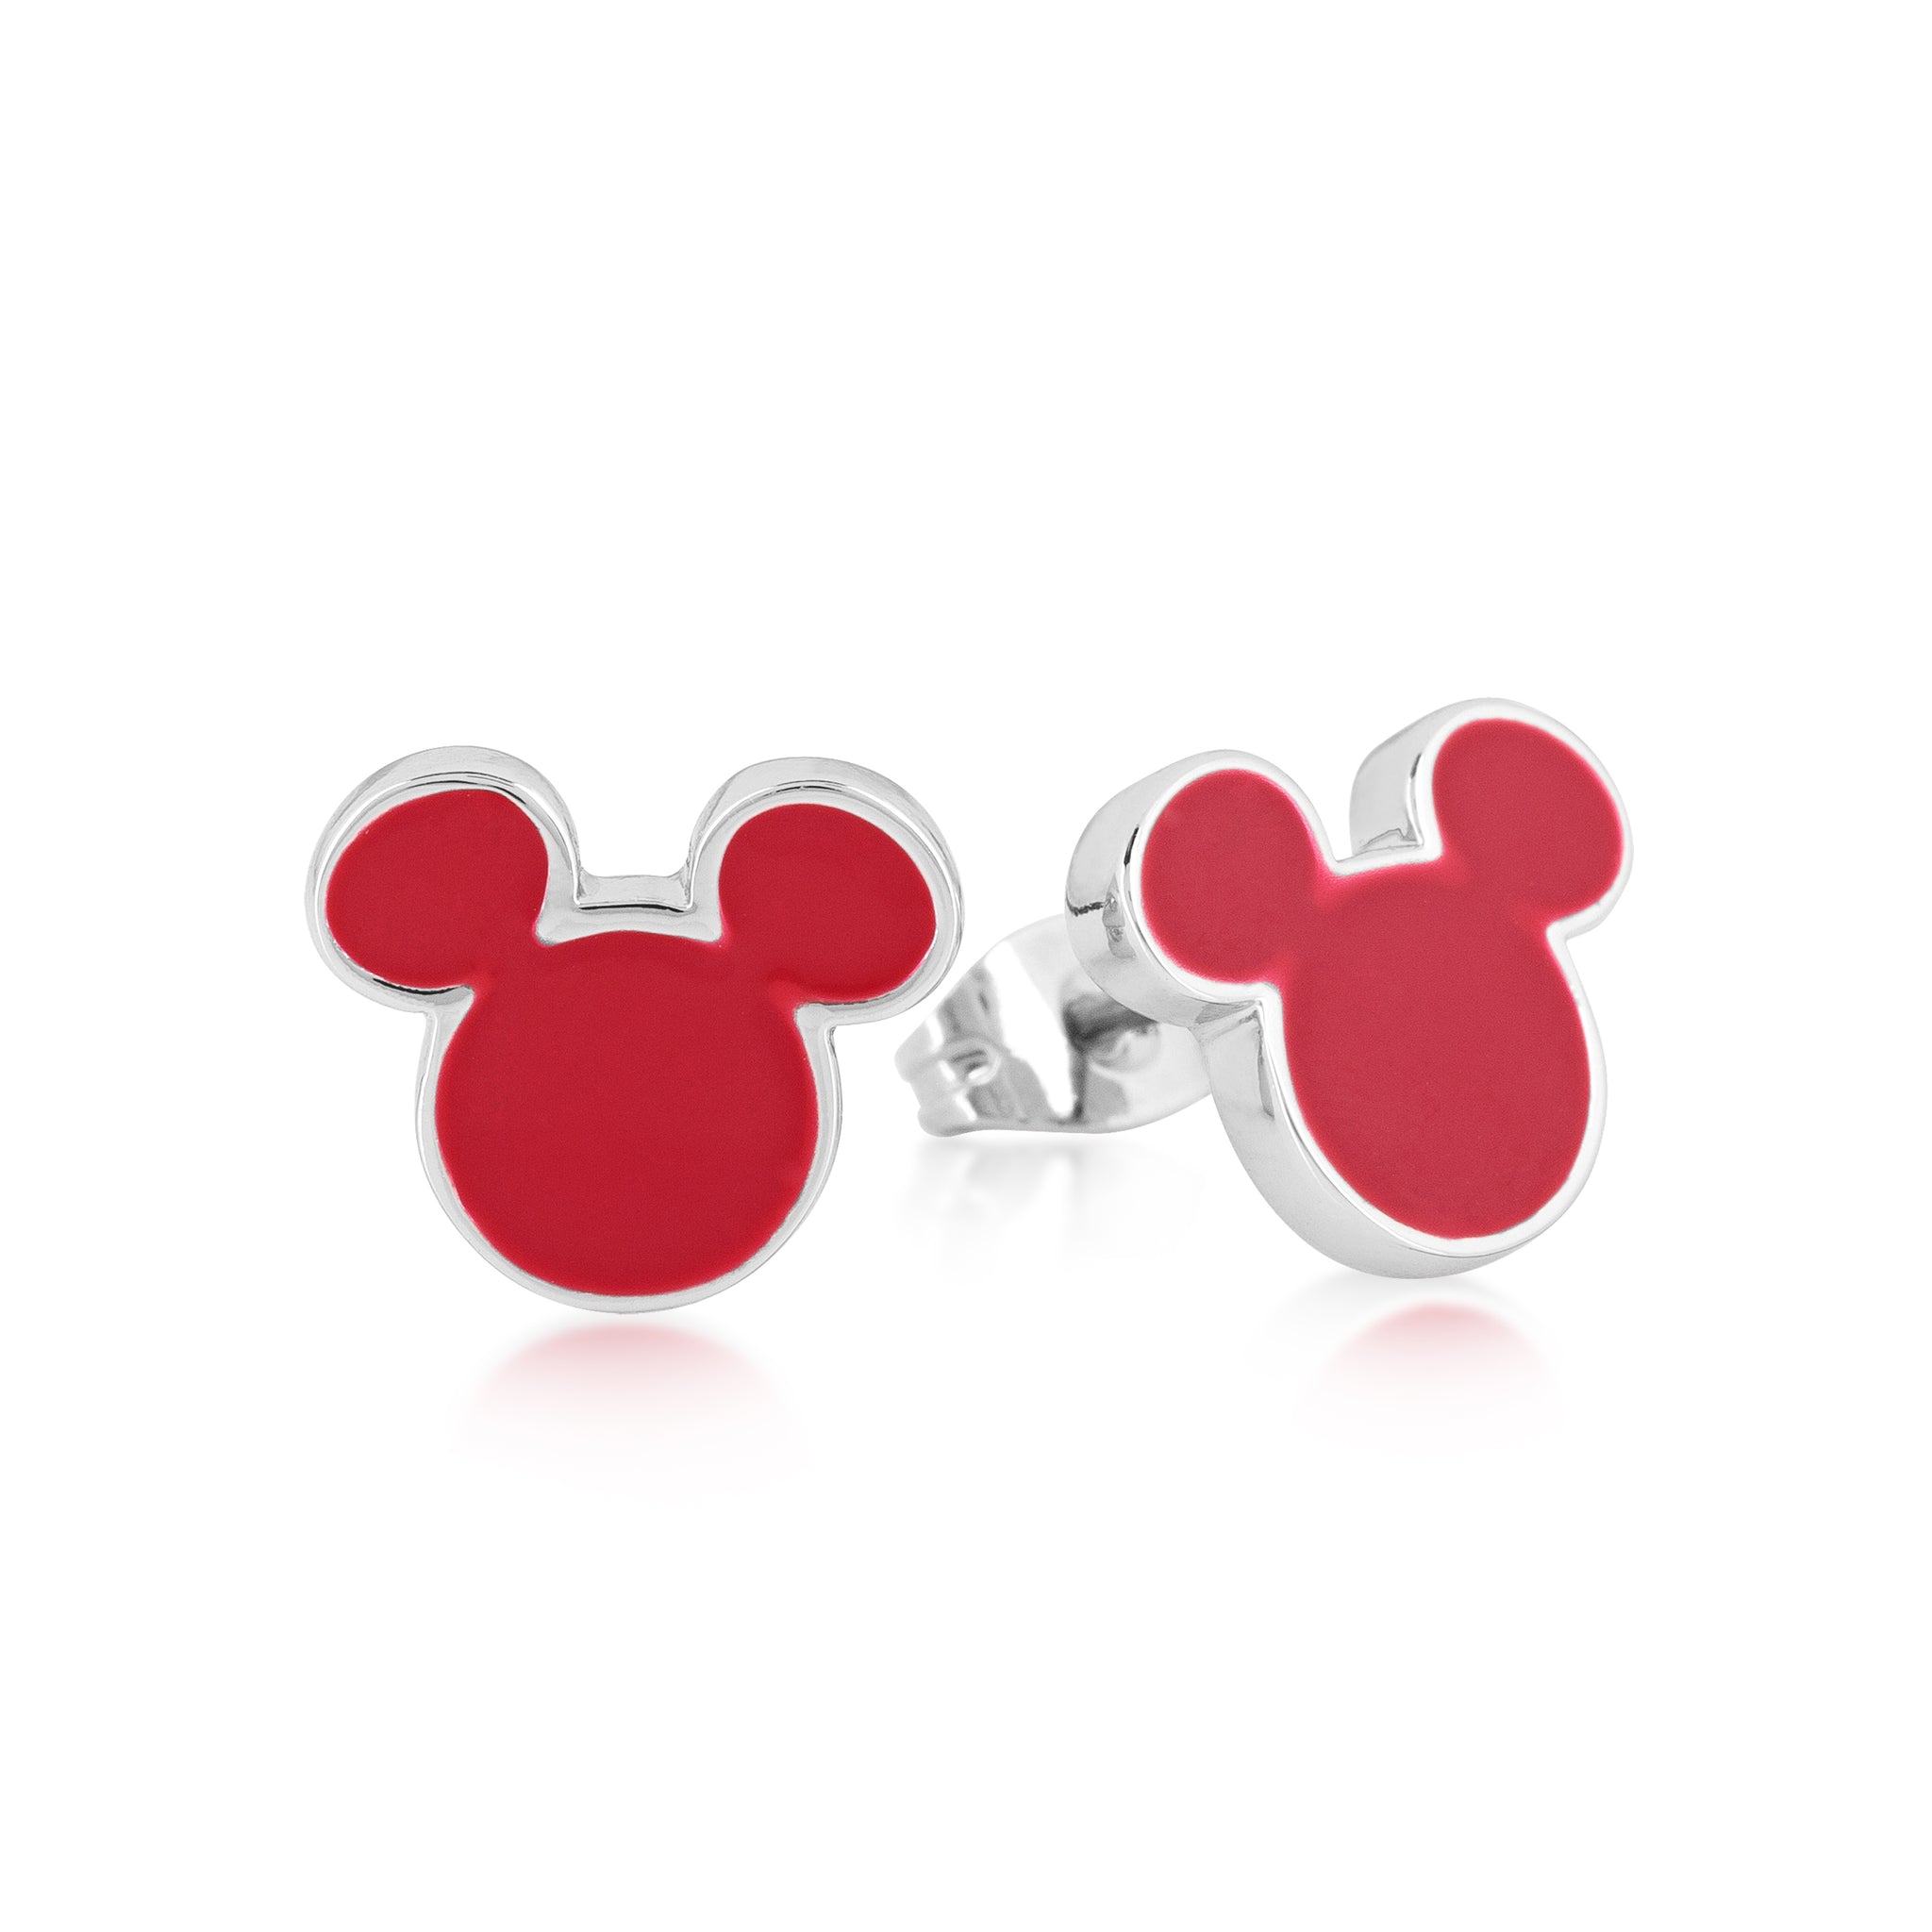 Children's Minnie Mouse Enamel Earrings